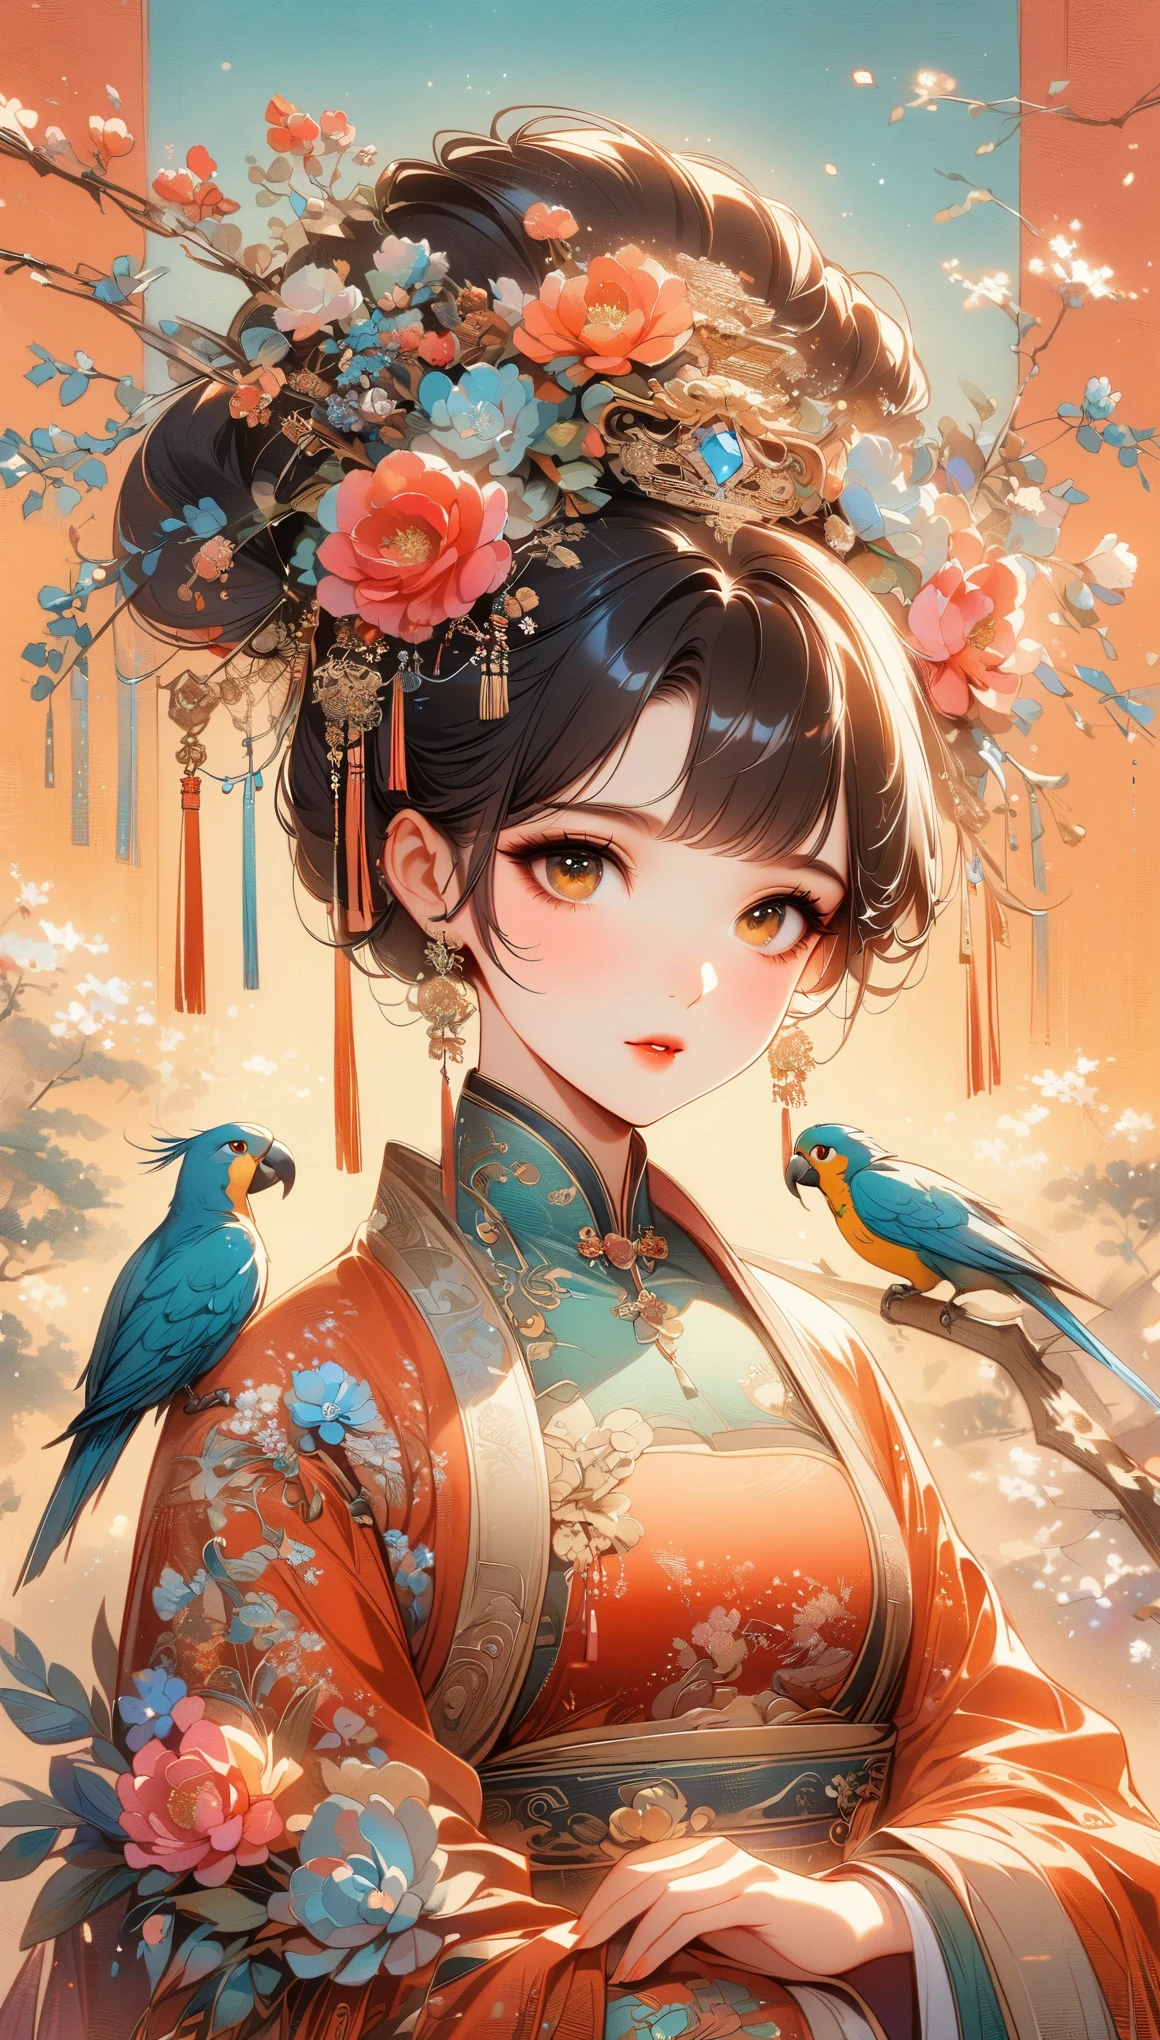 중국 전통 의상을 입은 아름다운 젊은 여성, 무성한 정원으로 둘러싸인. 그녀는 손가락에 앵무새를 쥐고 있다, 온화한 눈으로 그것을 바라보고 있다. 여자의 머리는 꽃과 전통 장신구로 장식된 정교한 업두 스타일입니다.. 그녀의 드레스는 우아하다, 꽃무늬 자수가 있는 고급 실크가 특징. 정원이 활짝 피어 있어요, 모란과 다른 꽃을 배경으로. 중국 고전 예술의 고요함과 아름다움을 포착한 장면, 자연의 조화로, (((매우 높은 채도, 자연 채도가 높아, 매우 밝은 색상)))